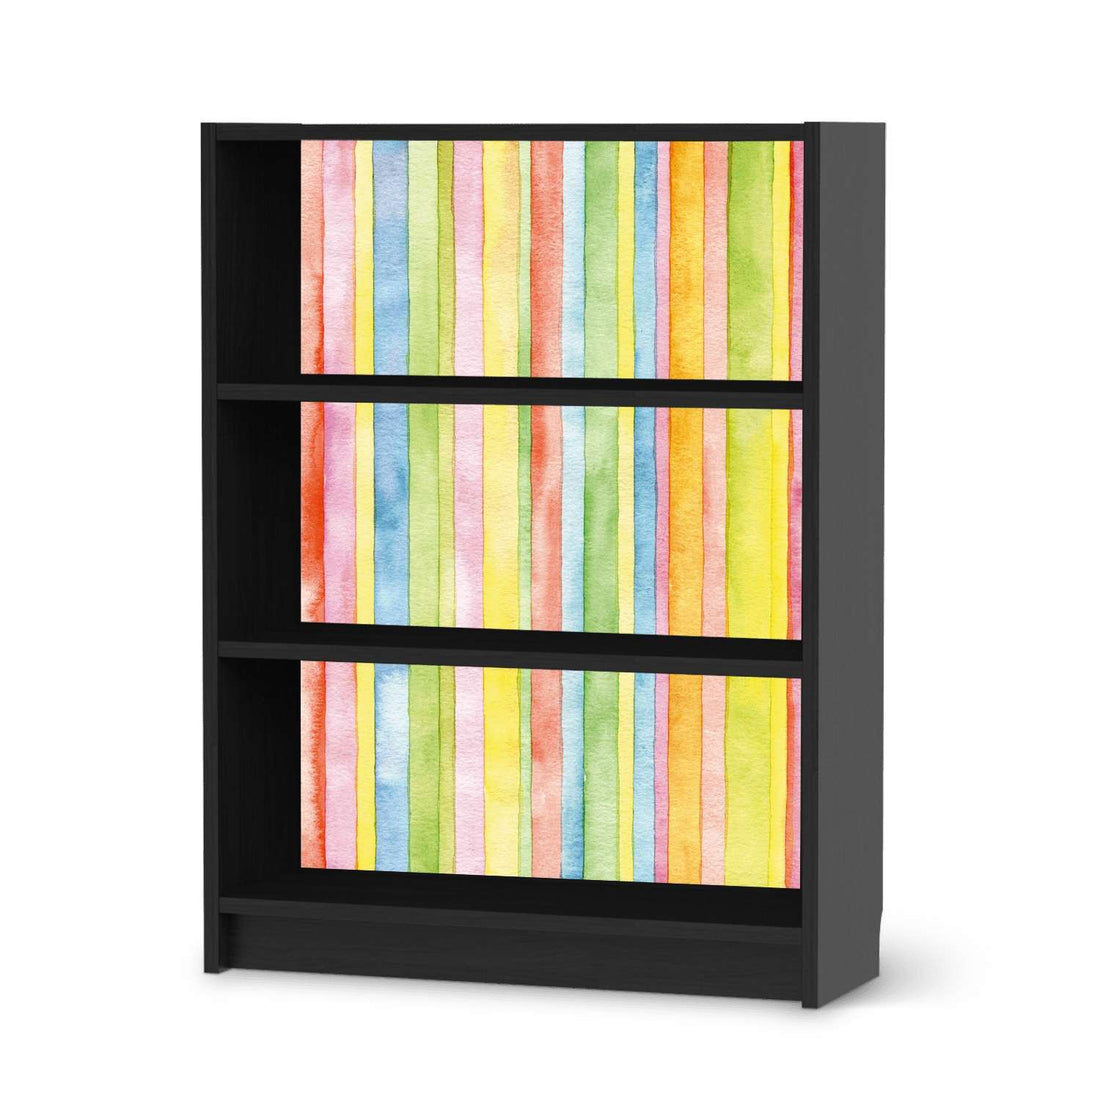 Möbelfolie Watercolor Stripes - IKEA Billy Regal 3 Fächer - schwarz